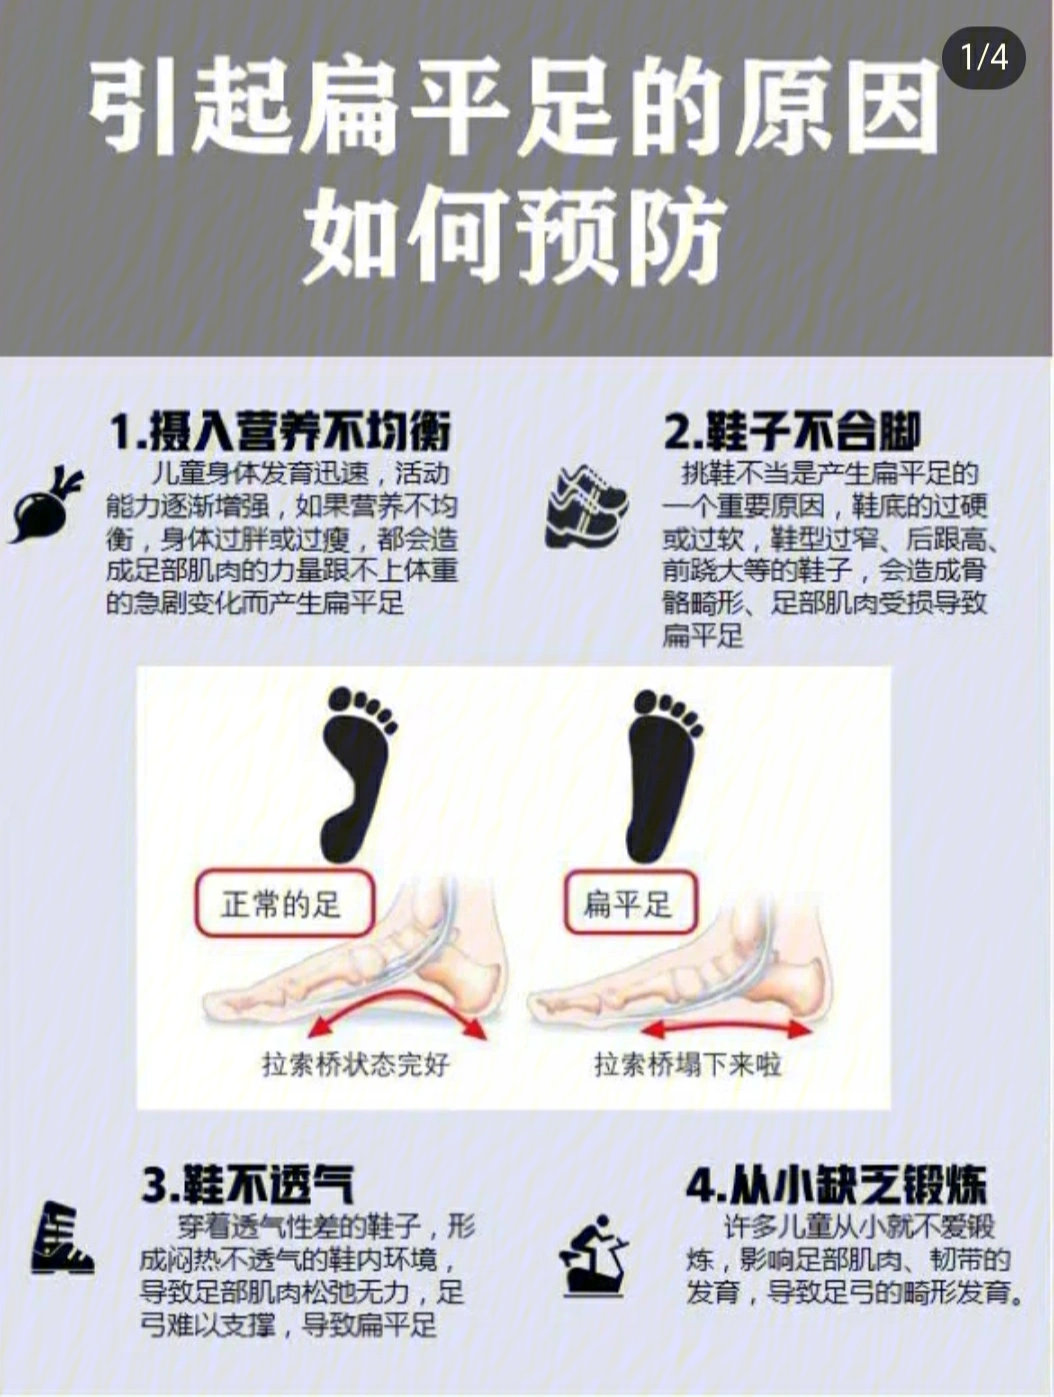 走路内八字,鞋底内侧磨损比较厉害;3经常小腿后侧酸痛;4